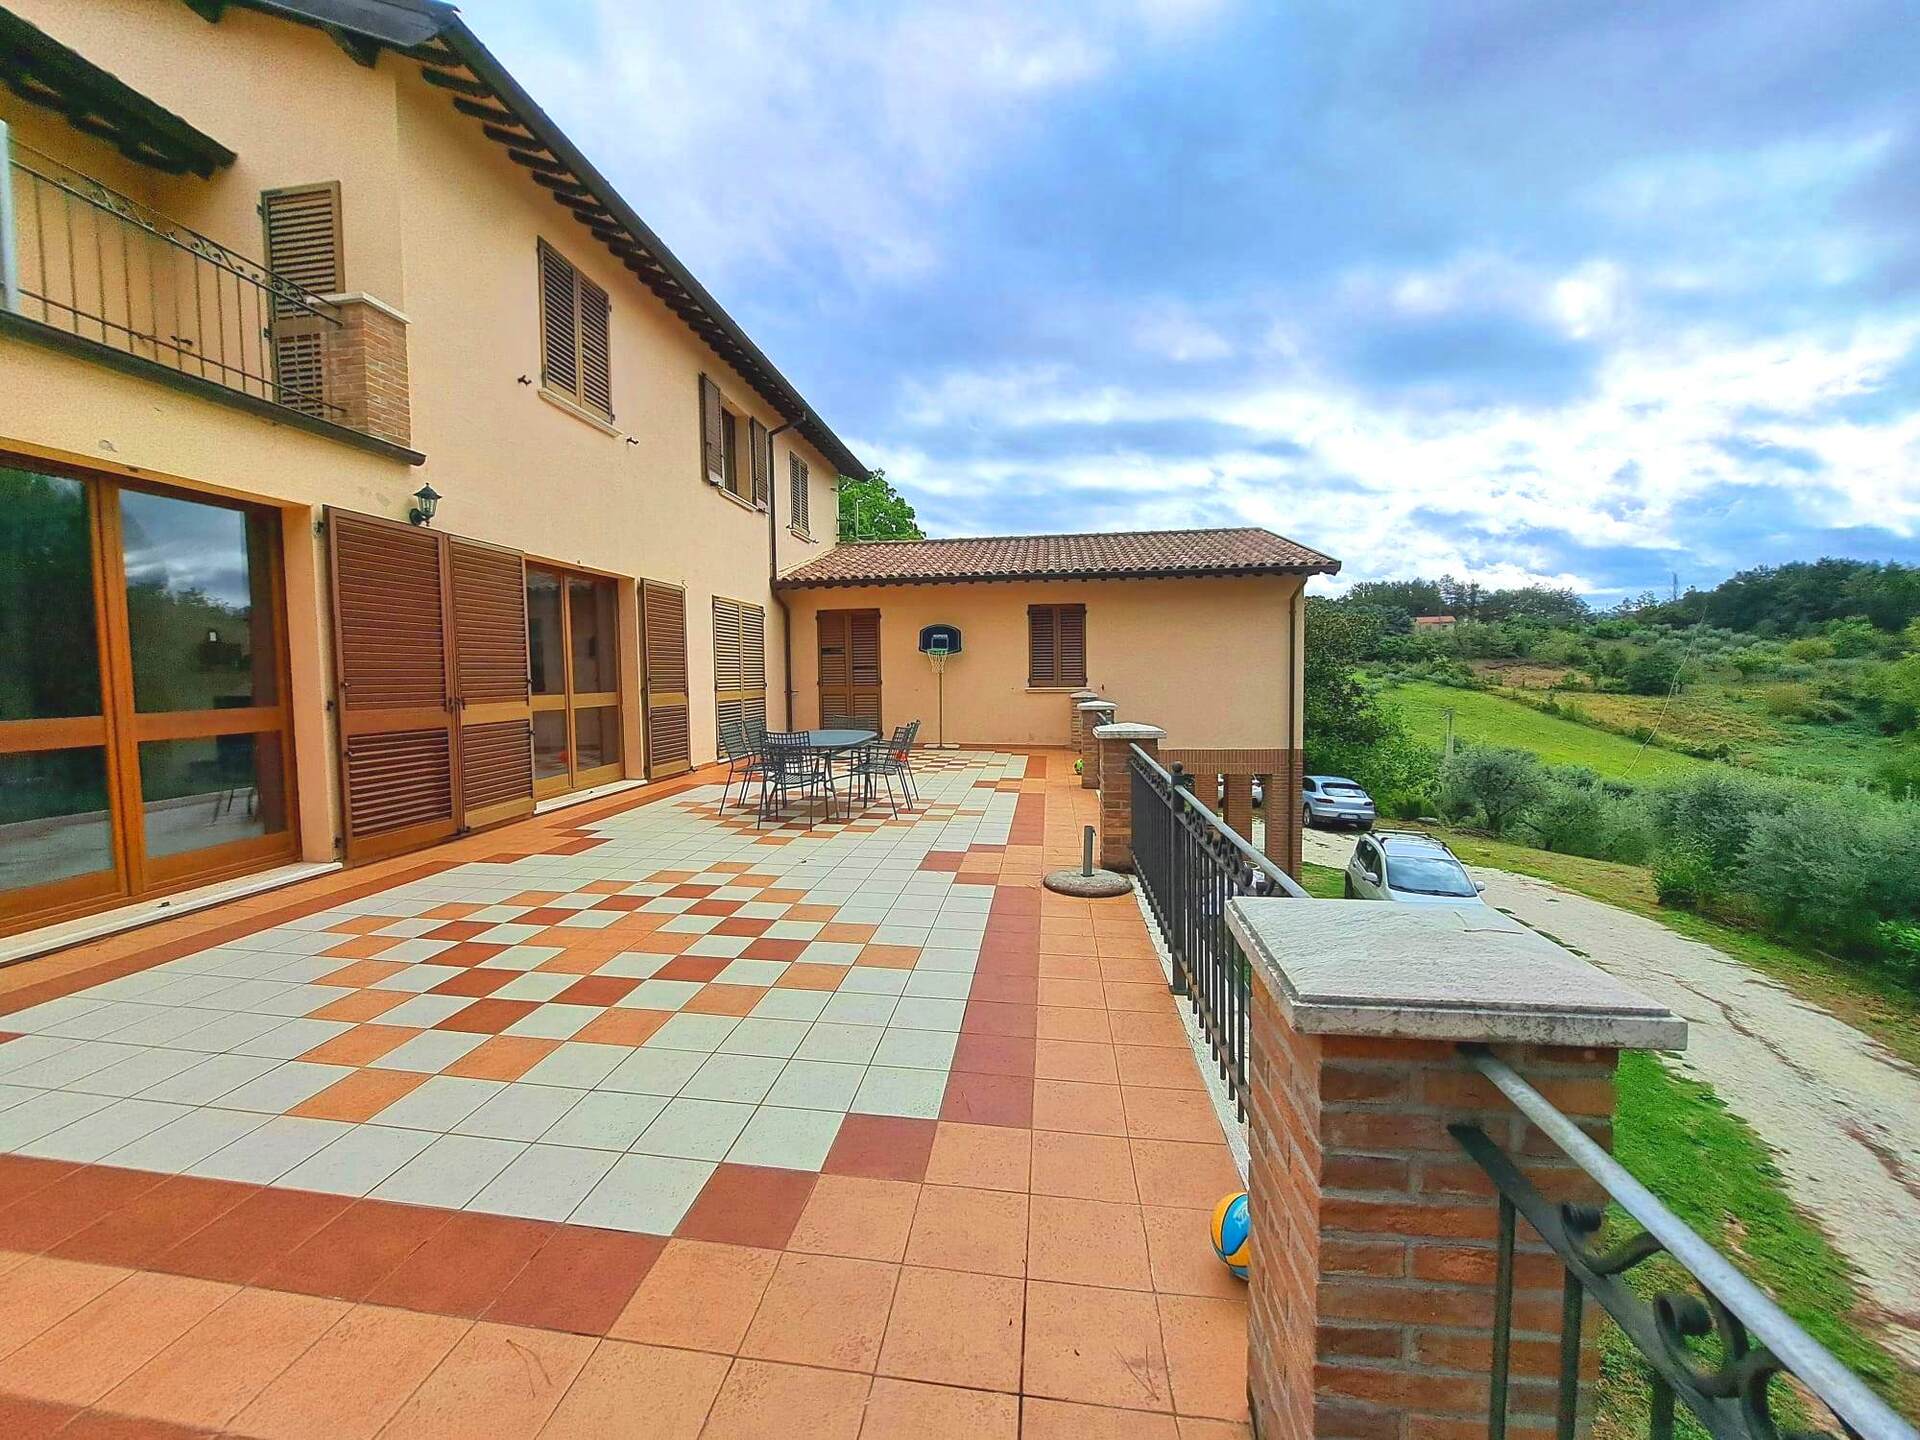 For sale villa in quiet zone Nocera Umbra Umbria